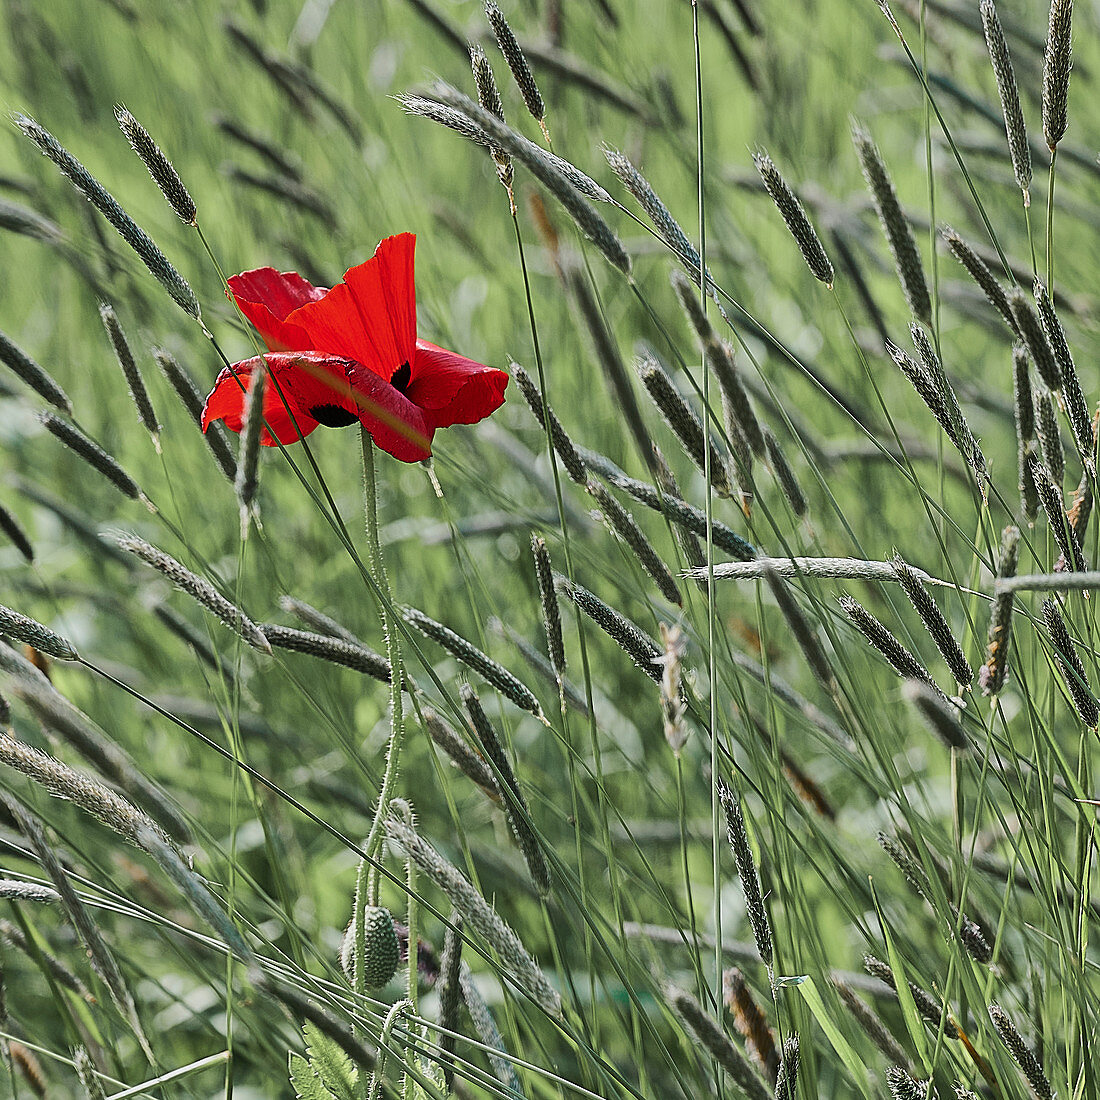 Corn poppy in the grass, Lower Saxony, Germany